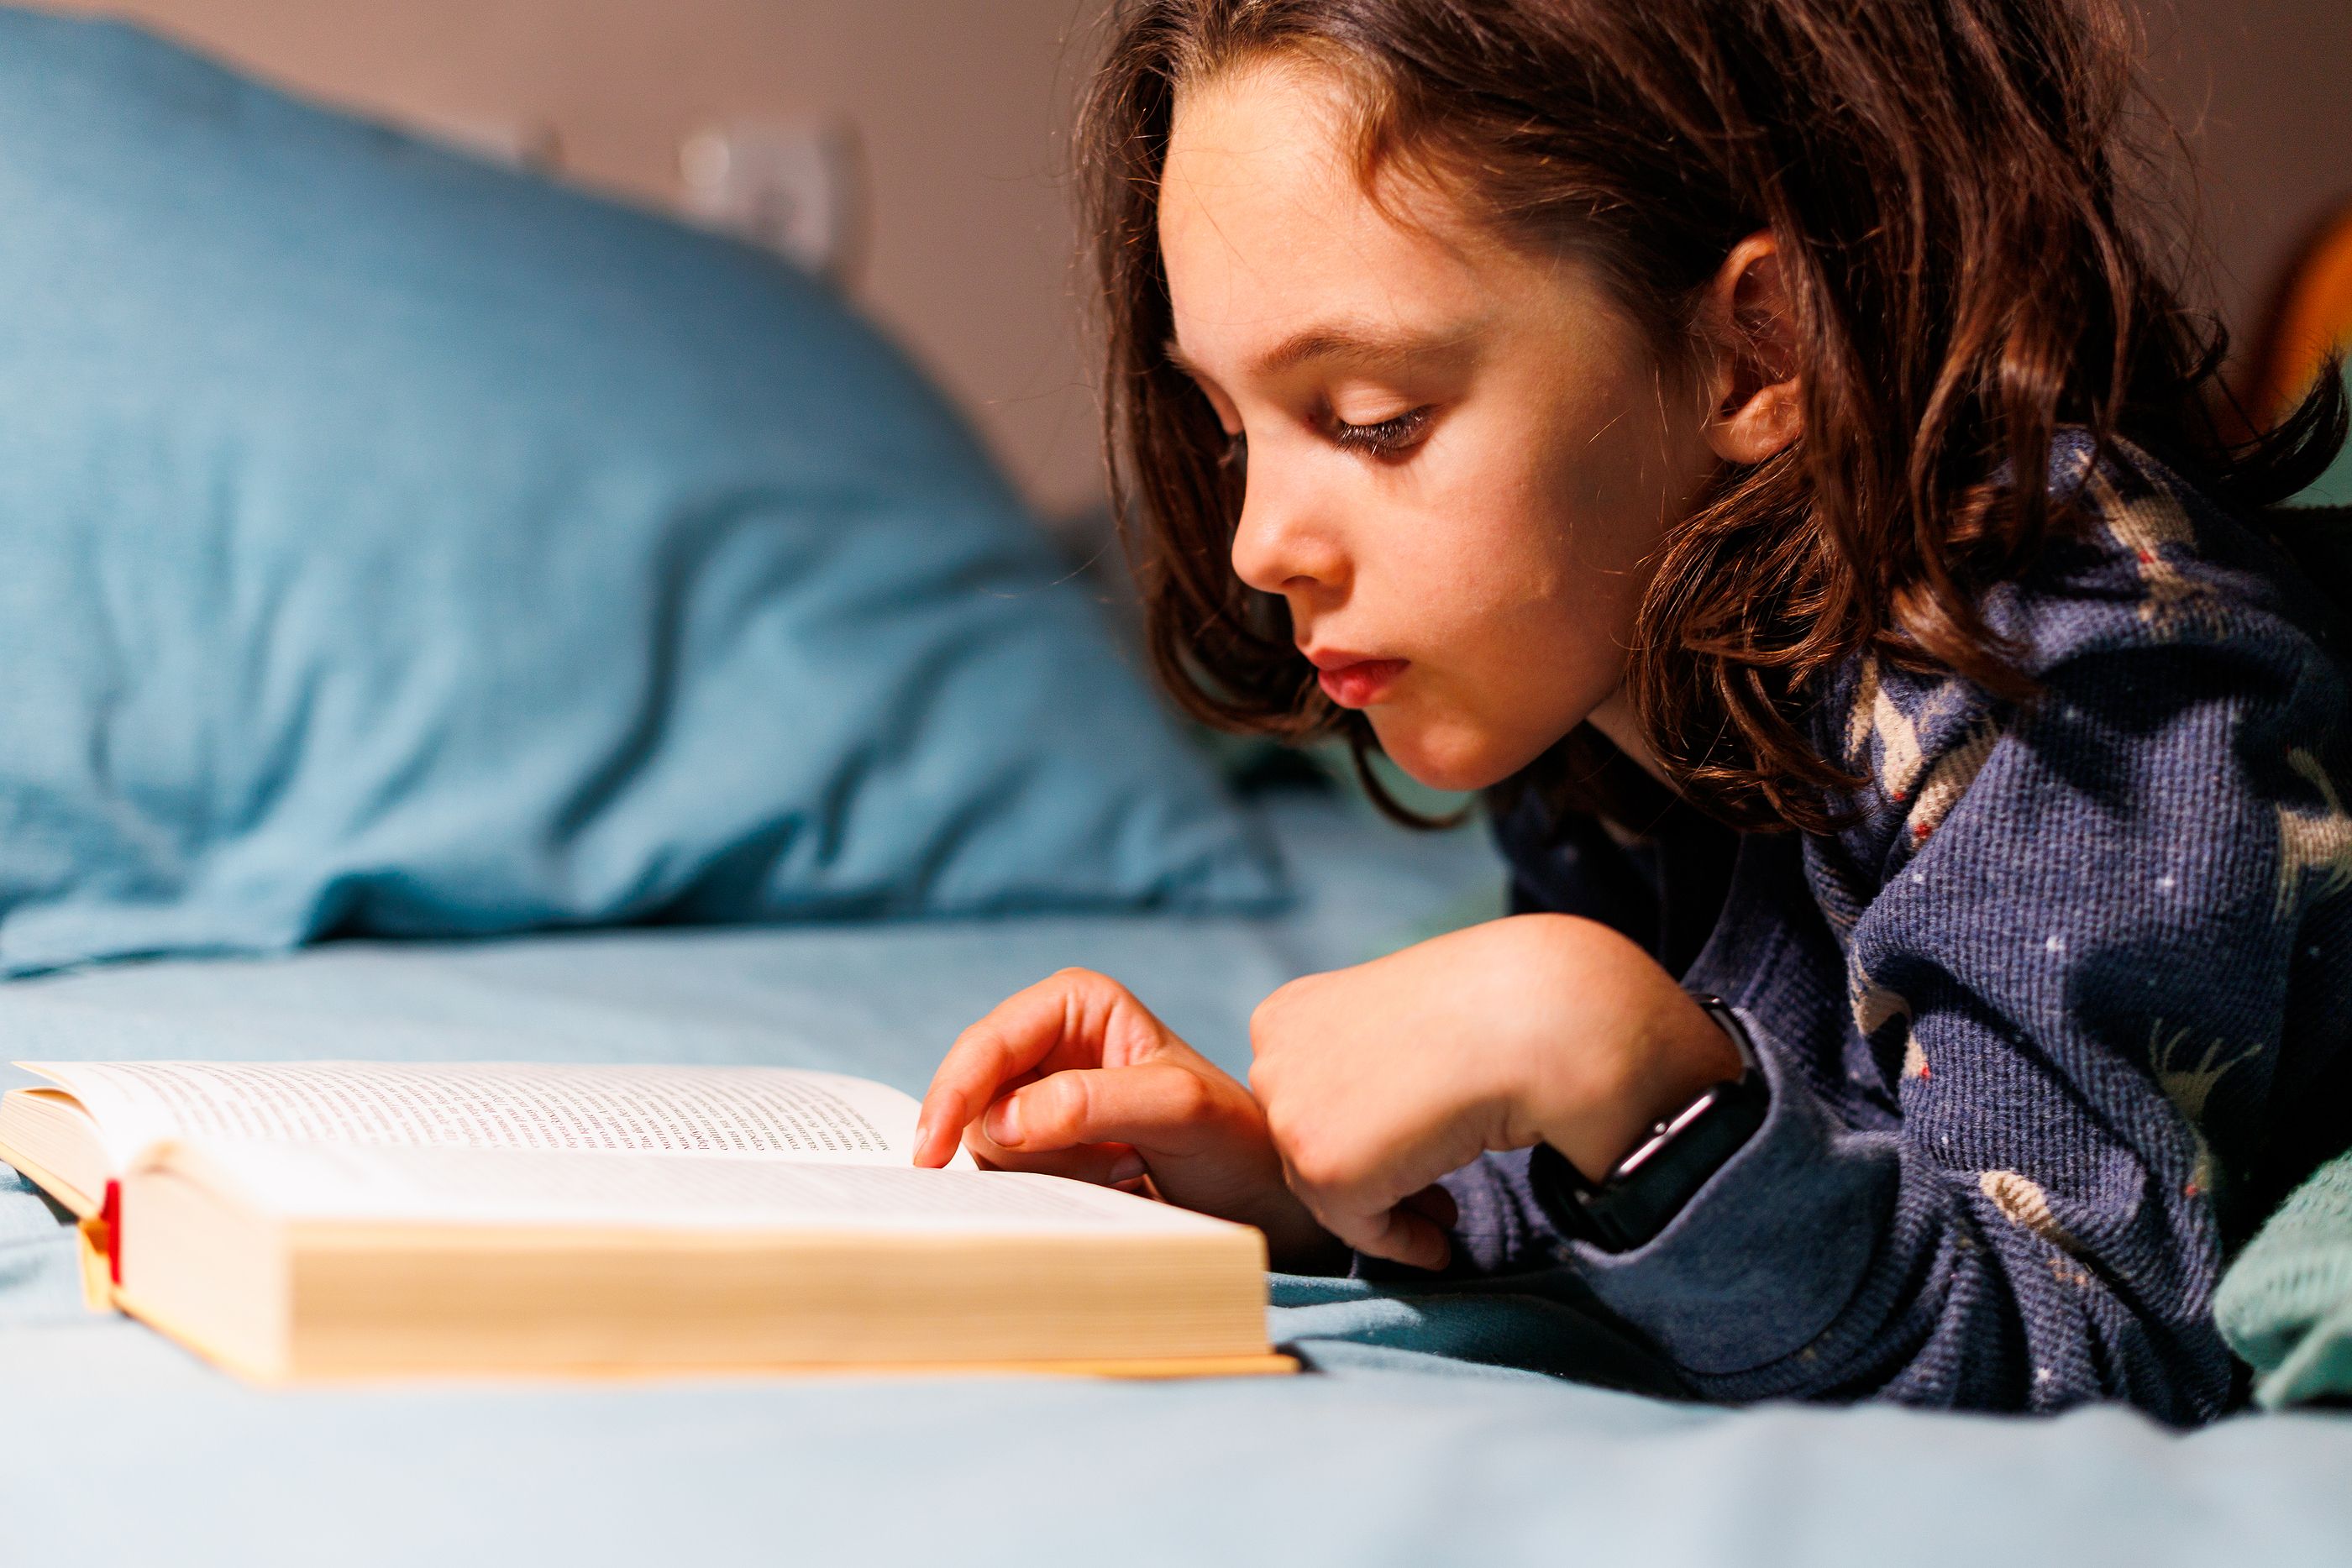 La lectura por placer en la infancia se relaciona con mejor rendimiento cognitivo